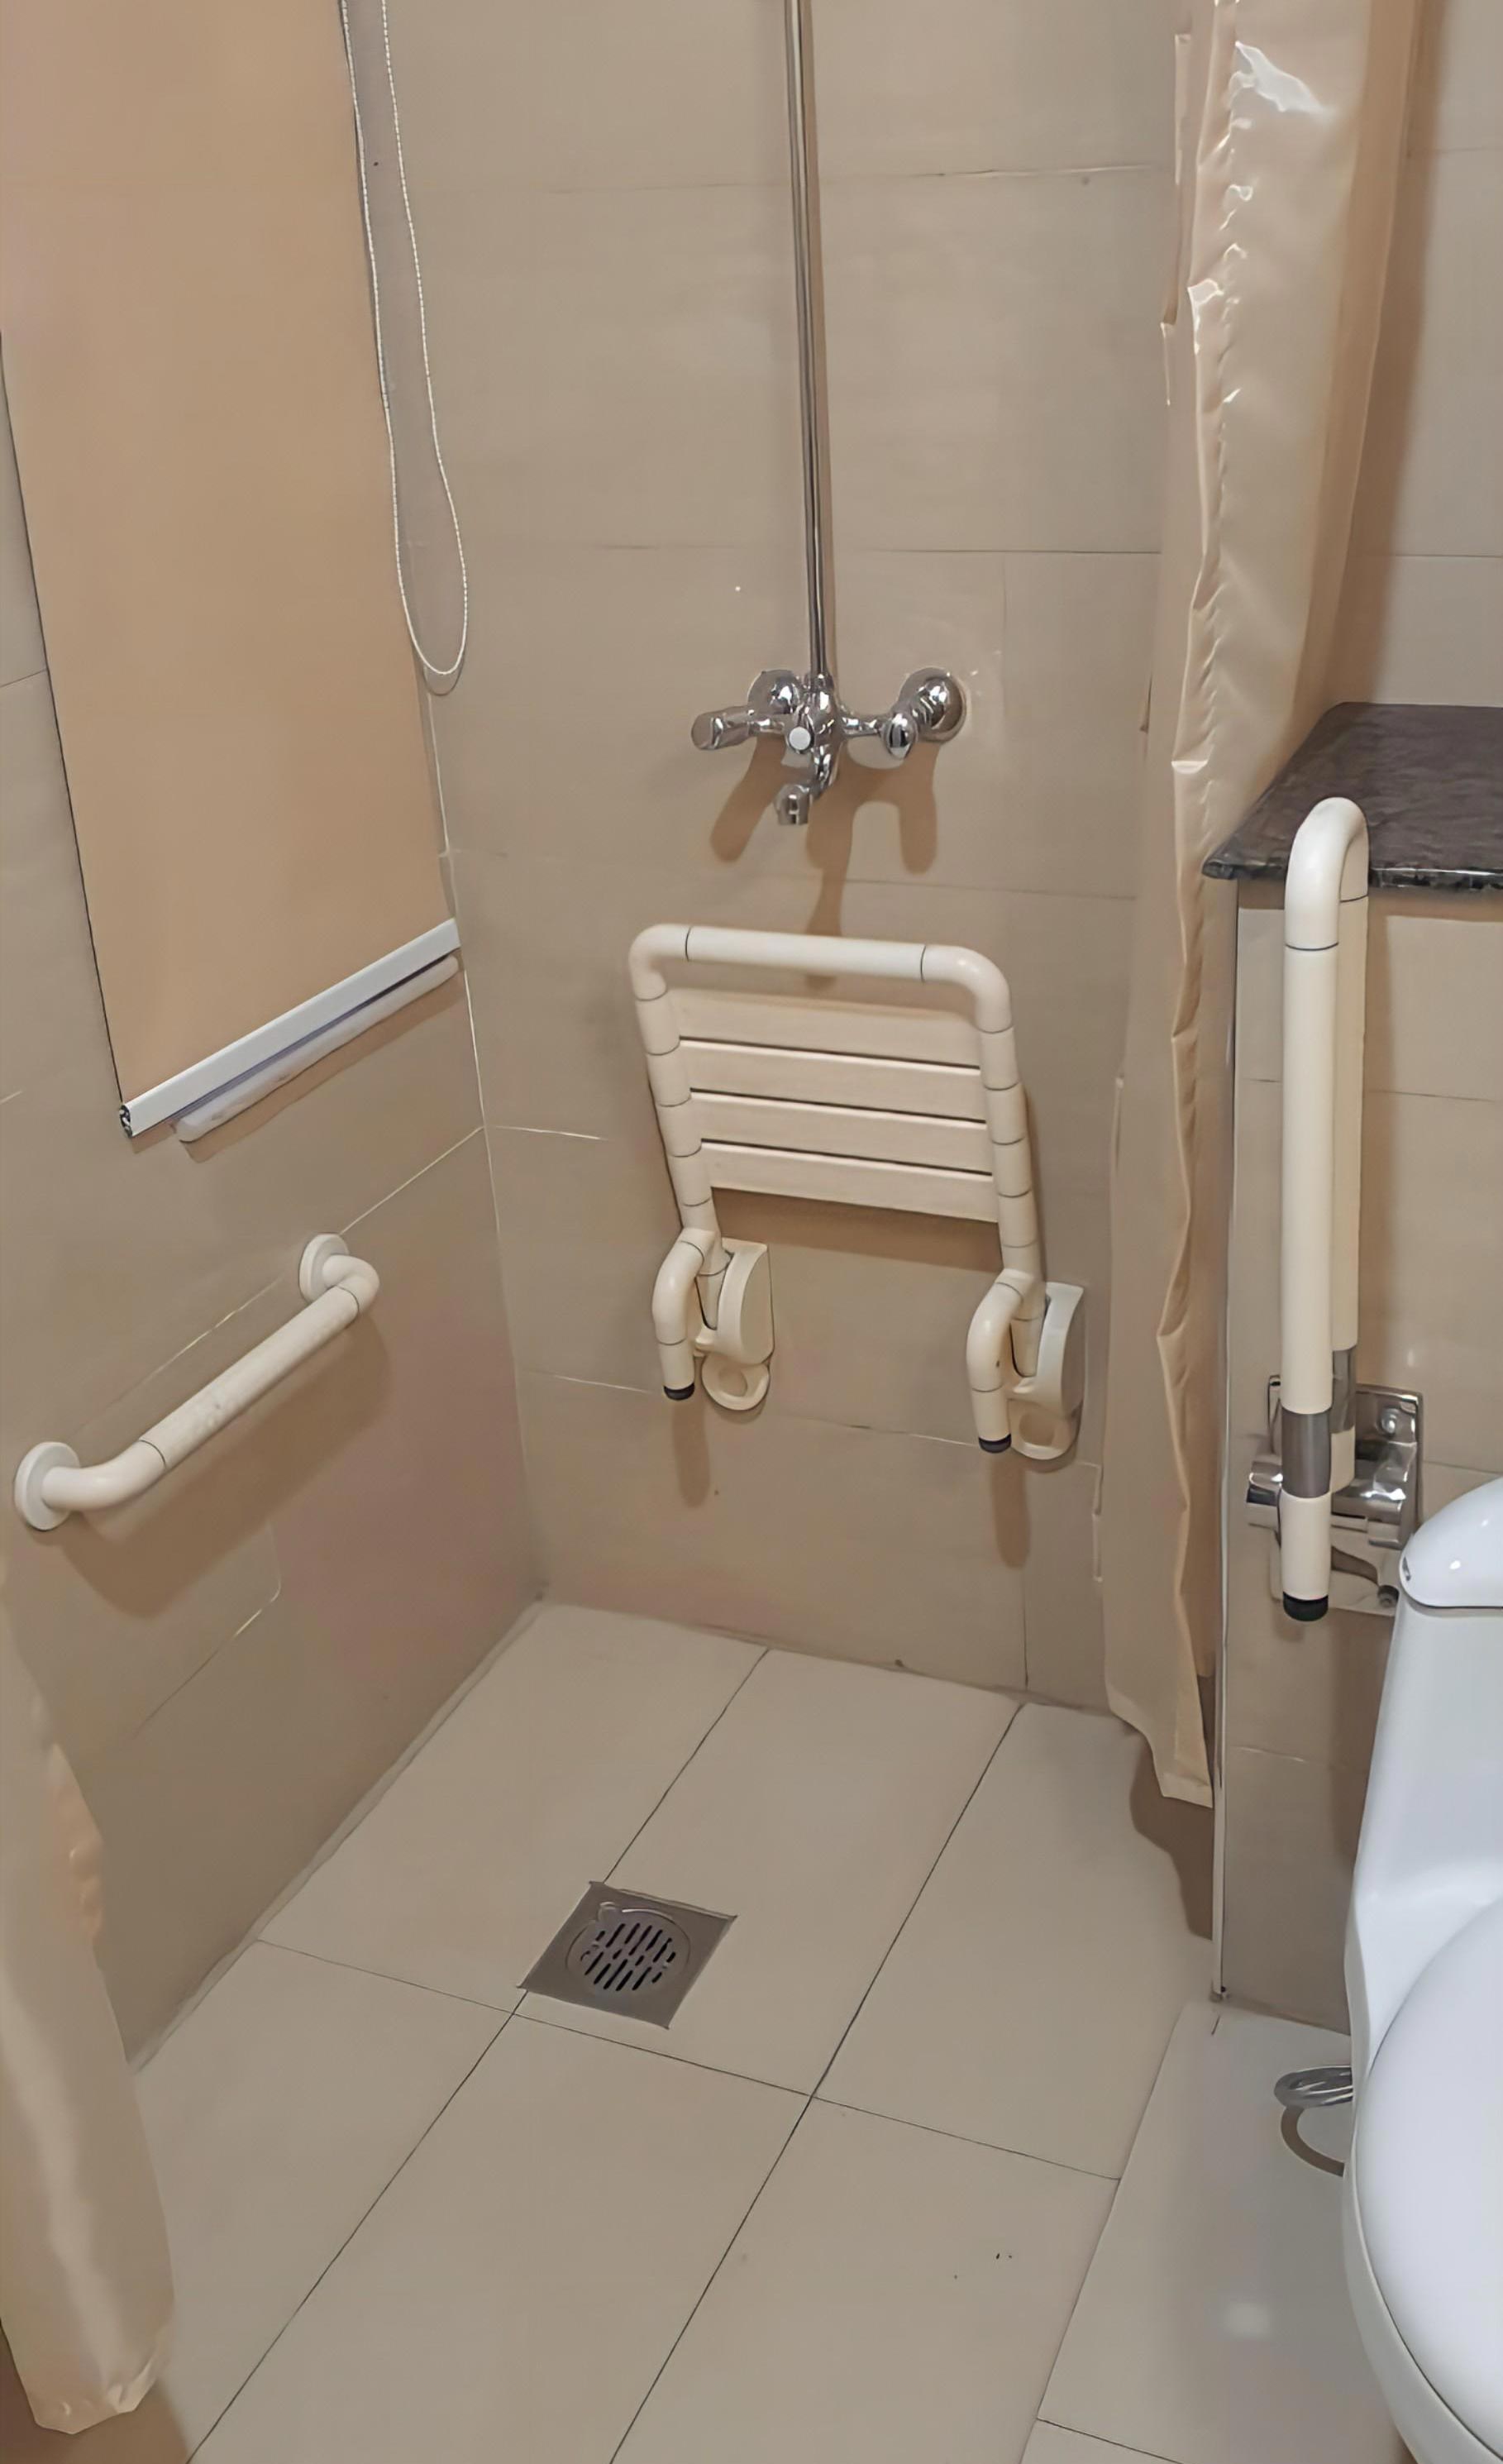 Bathroom Safety Grab Bar System